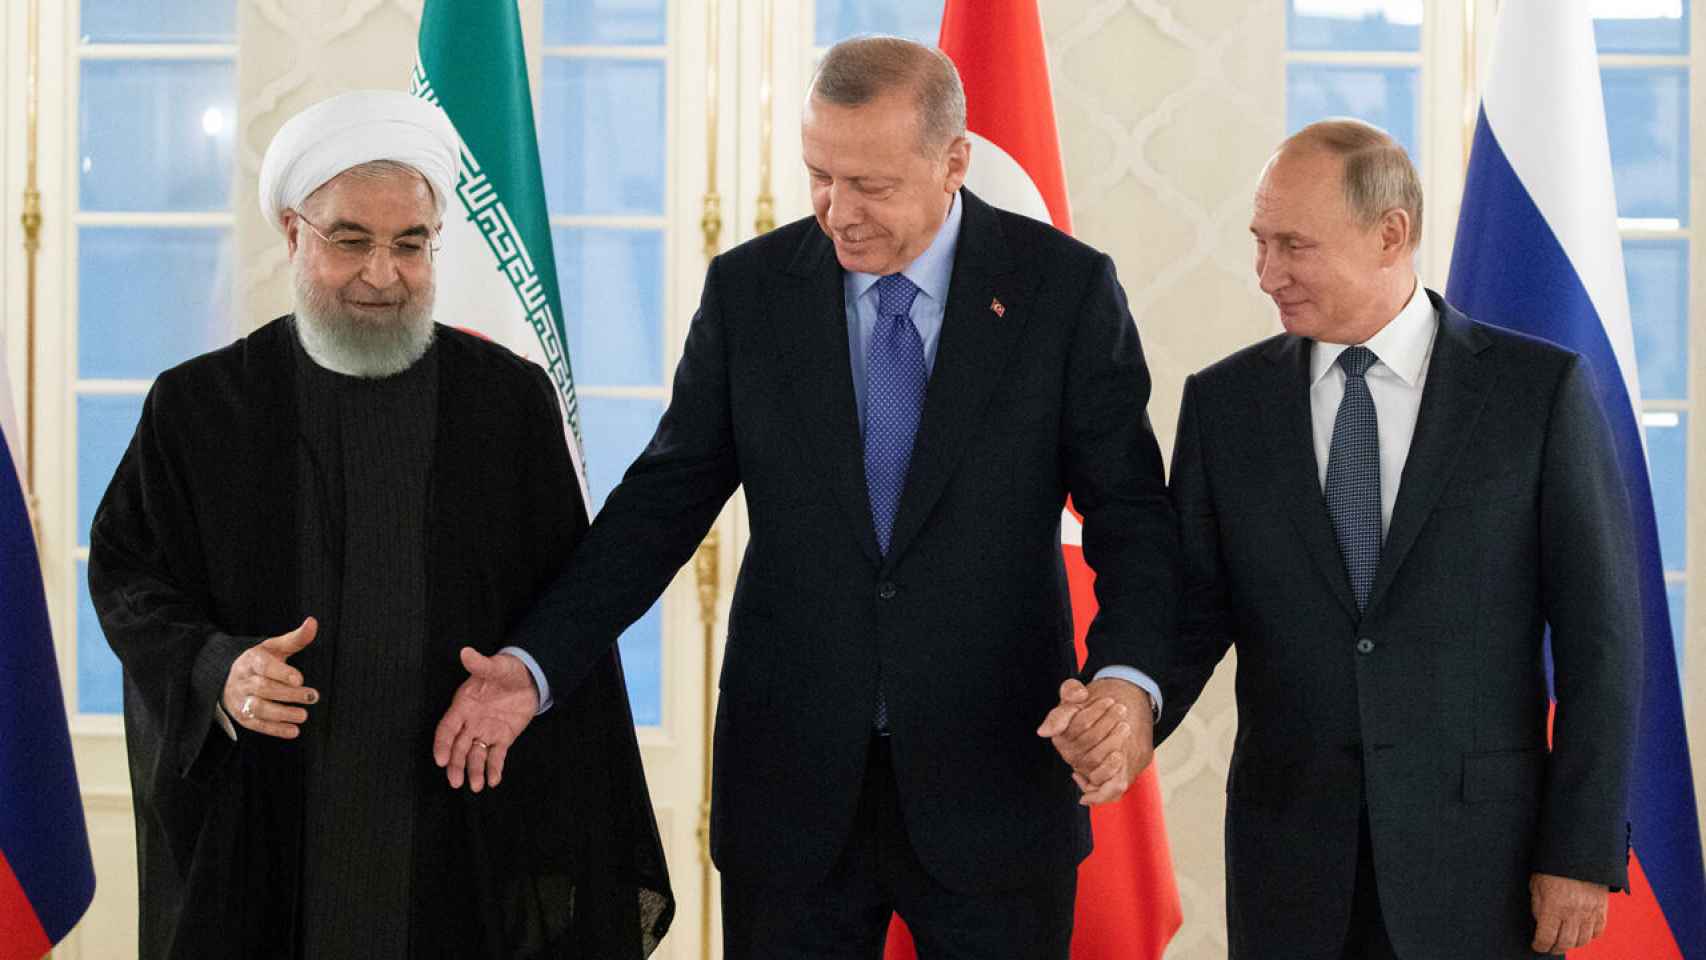 Los presidentes de Irán, Turquía y Rusia, Rohani, Erdogan y Putin, respectivamente, en 2019 en Moscú.